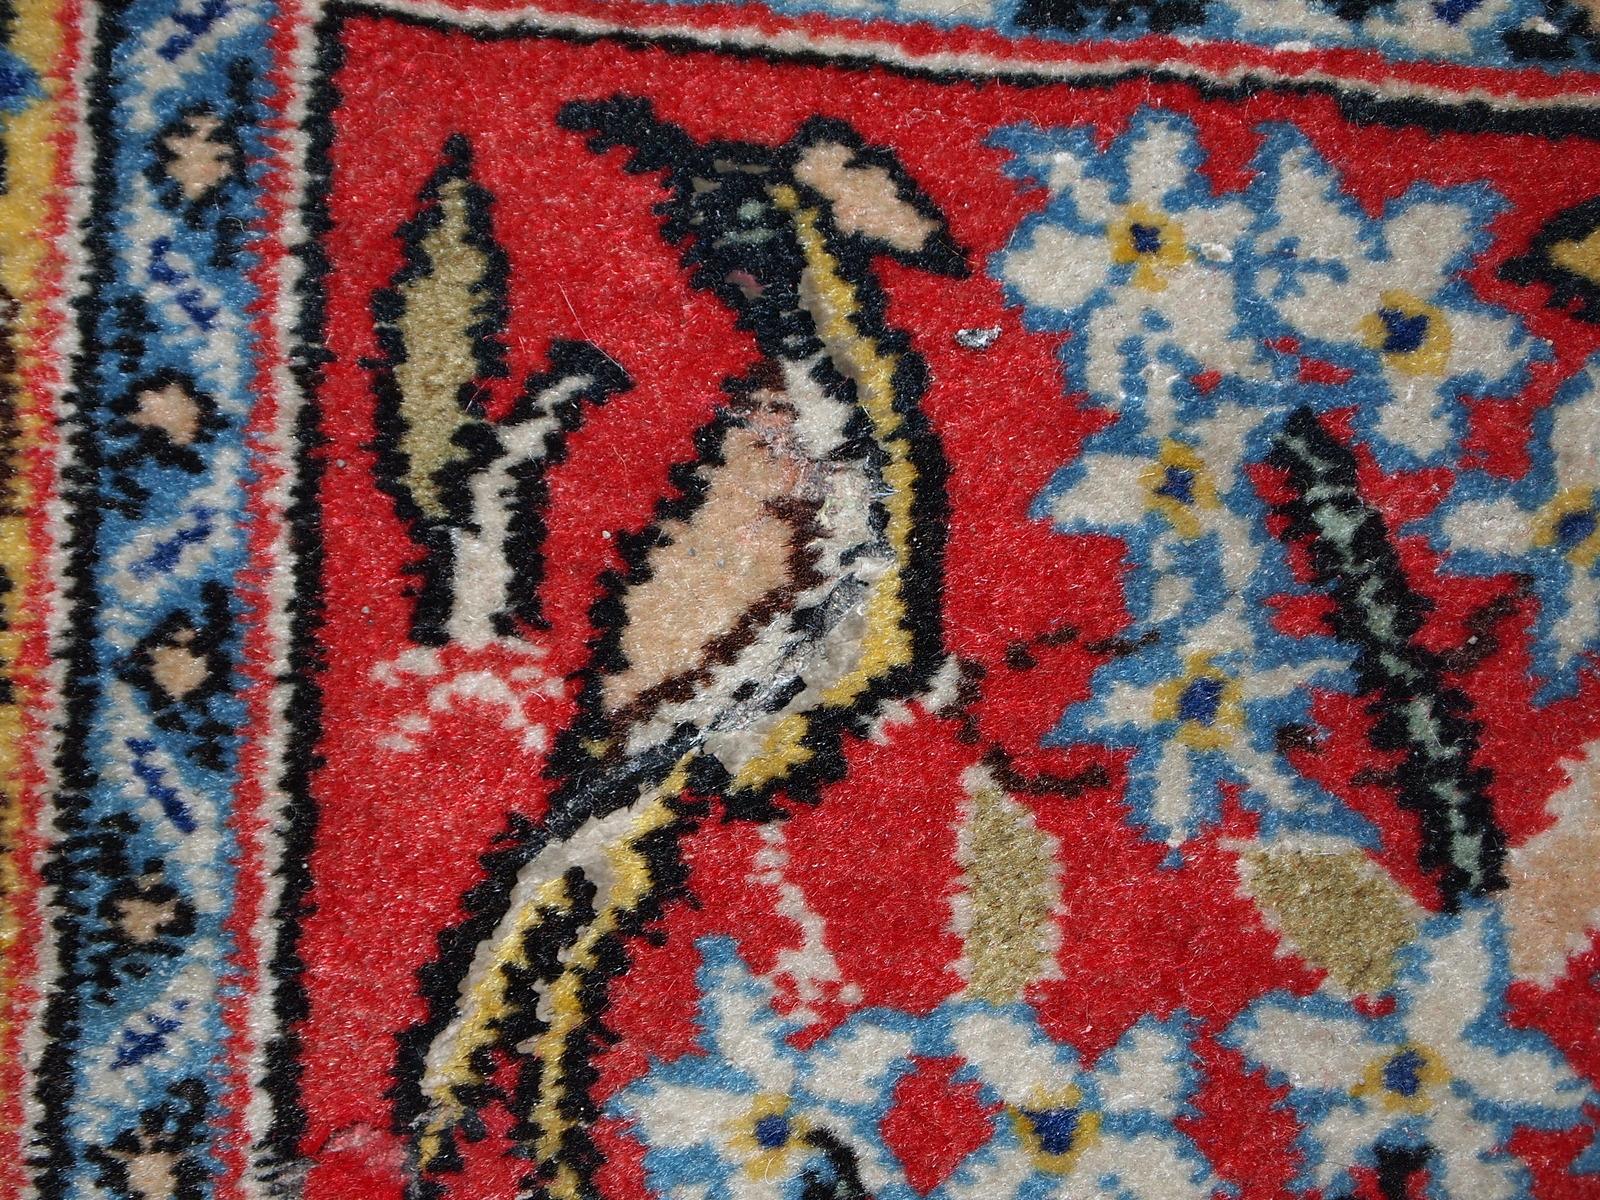 Alte Matte im Tabriz-Stil in gutem Originalzustand. Dieser Teppich besteht aus roter, himmelblauer und gelber Wolle. Maße: 1.5' x 1.7' (46cm x 54cm).